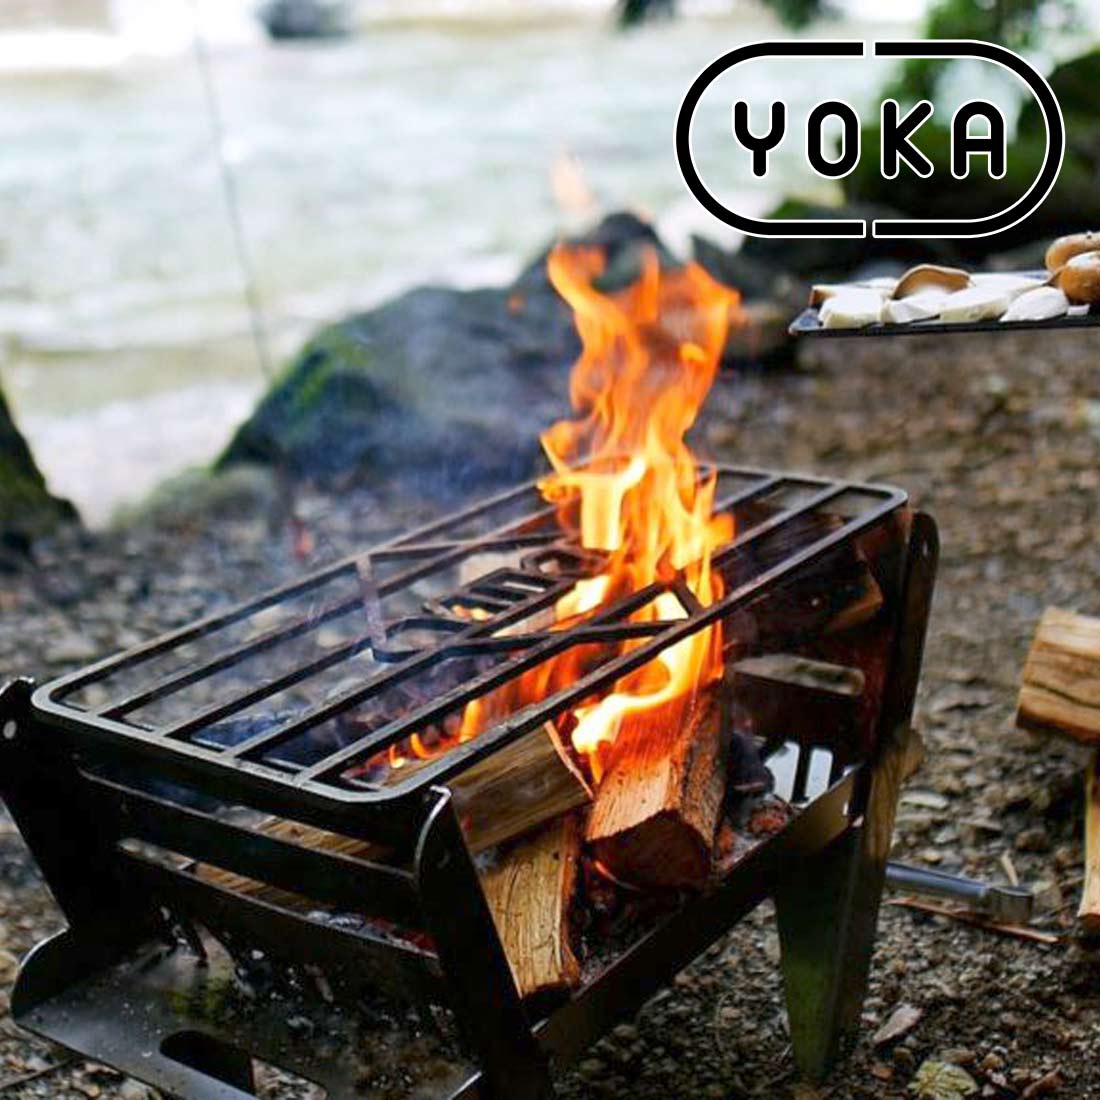 YOKA 焚き火台 COOKING FIRE PIT グリルセット - アウトドア